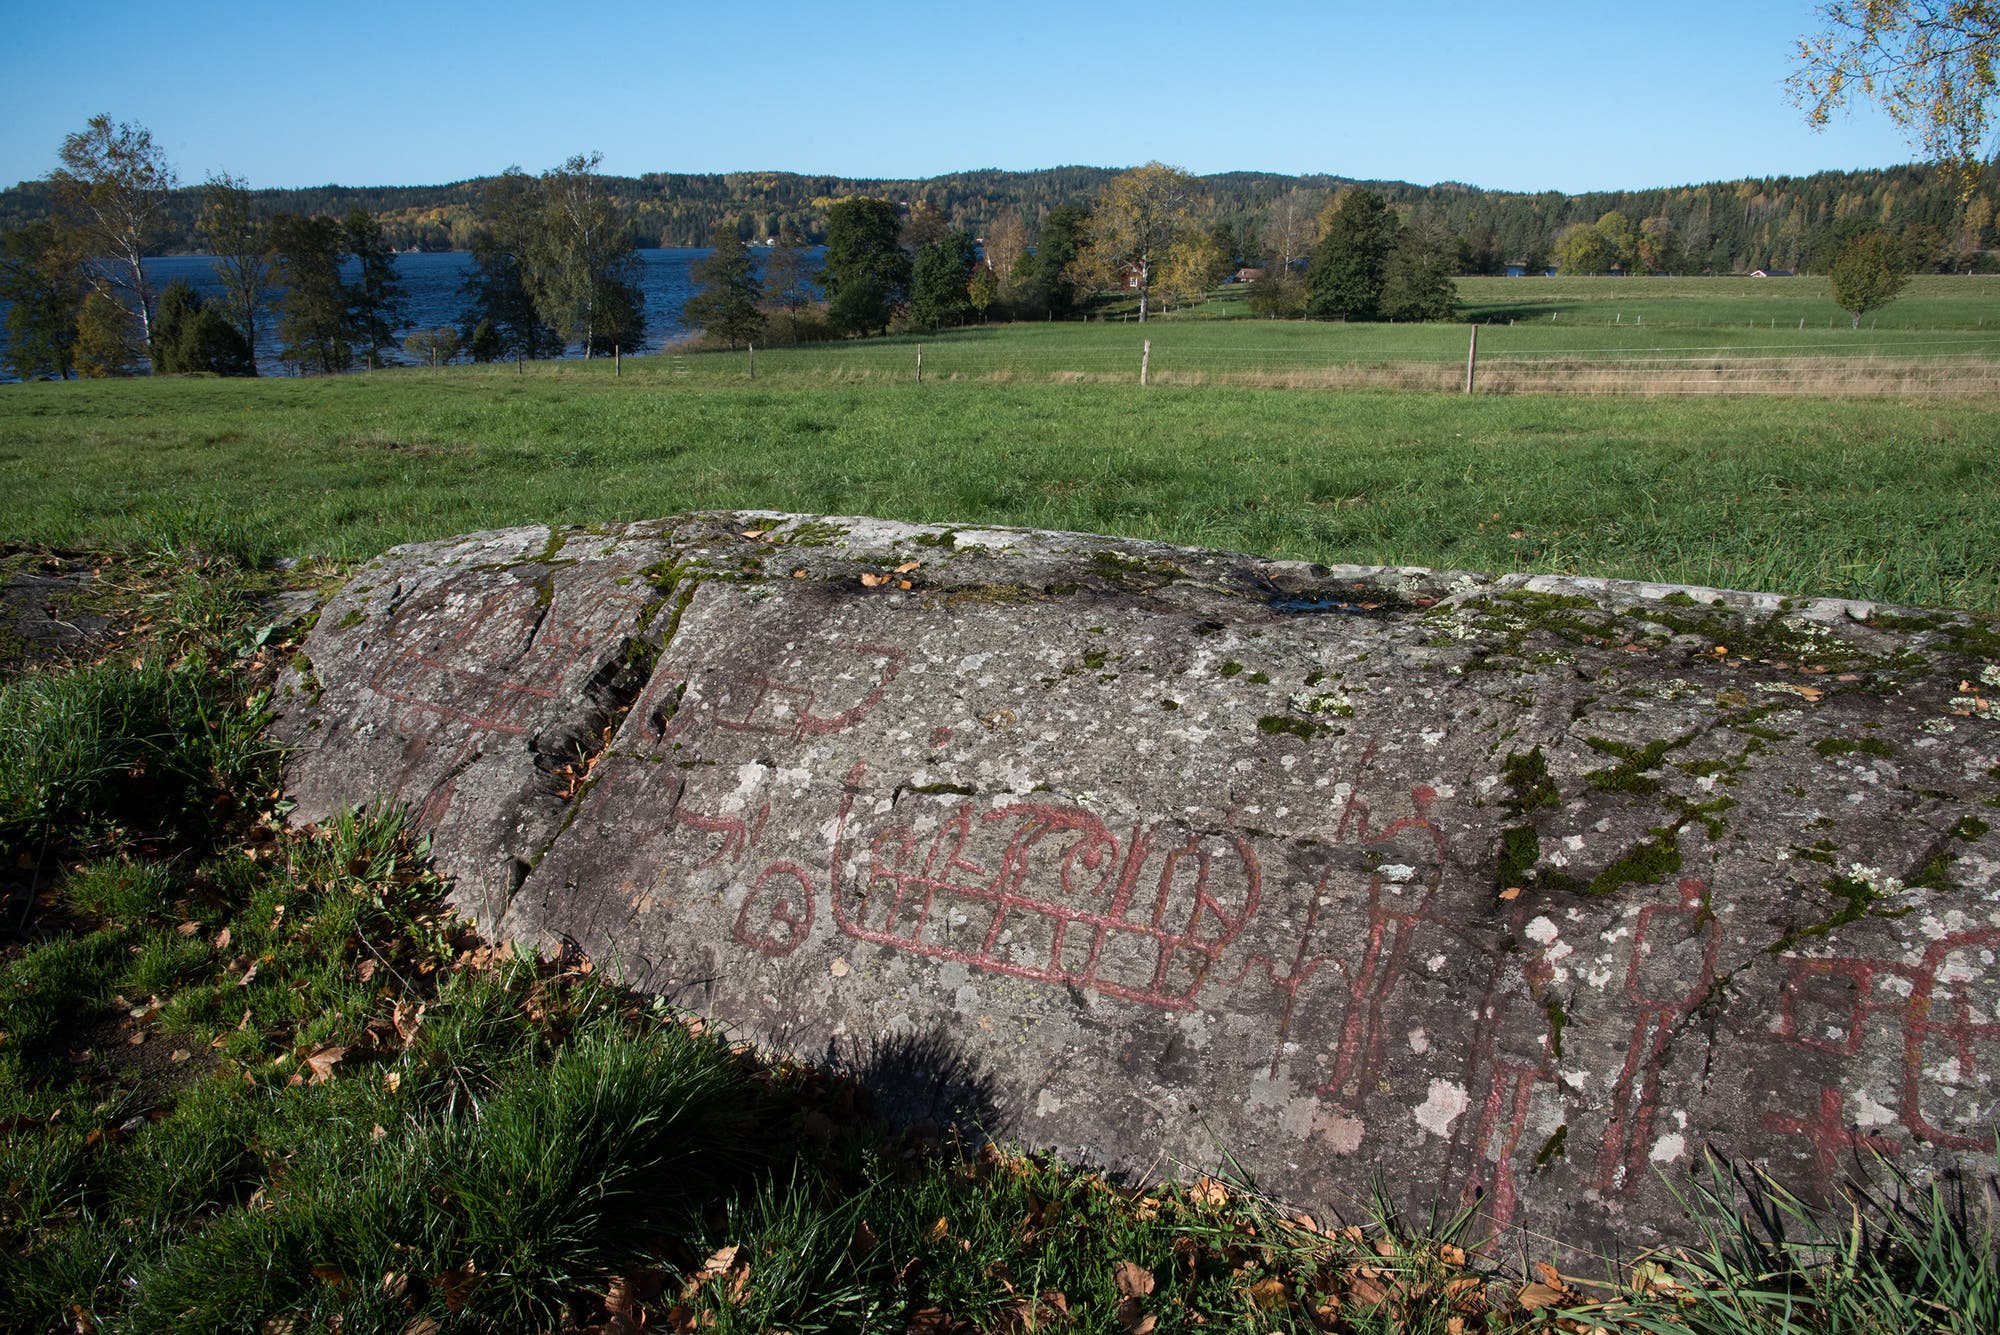 Rot ausgemalte Petroglyphen auf einem Felsen in der Landschaft.